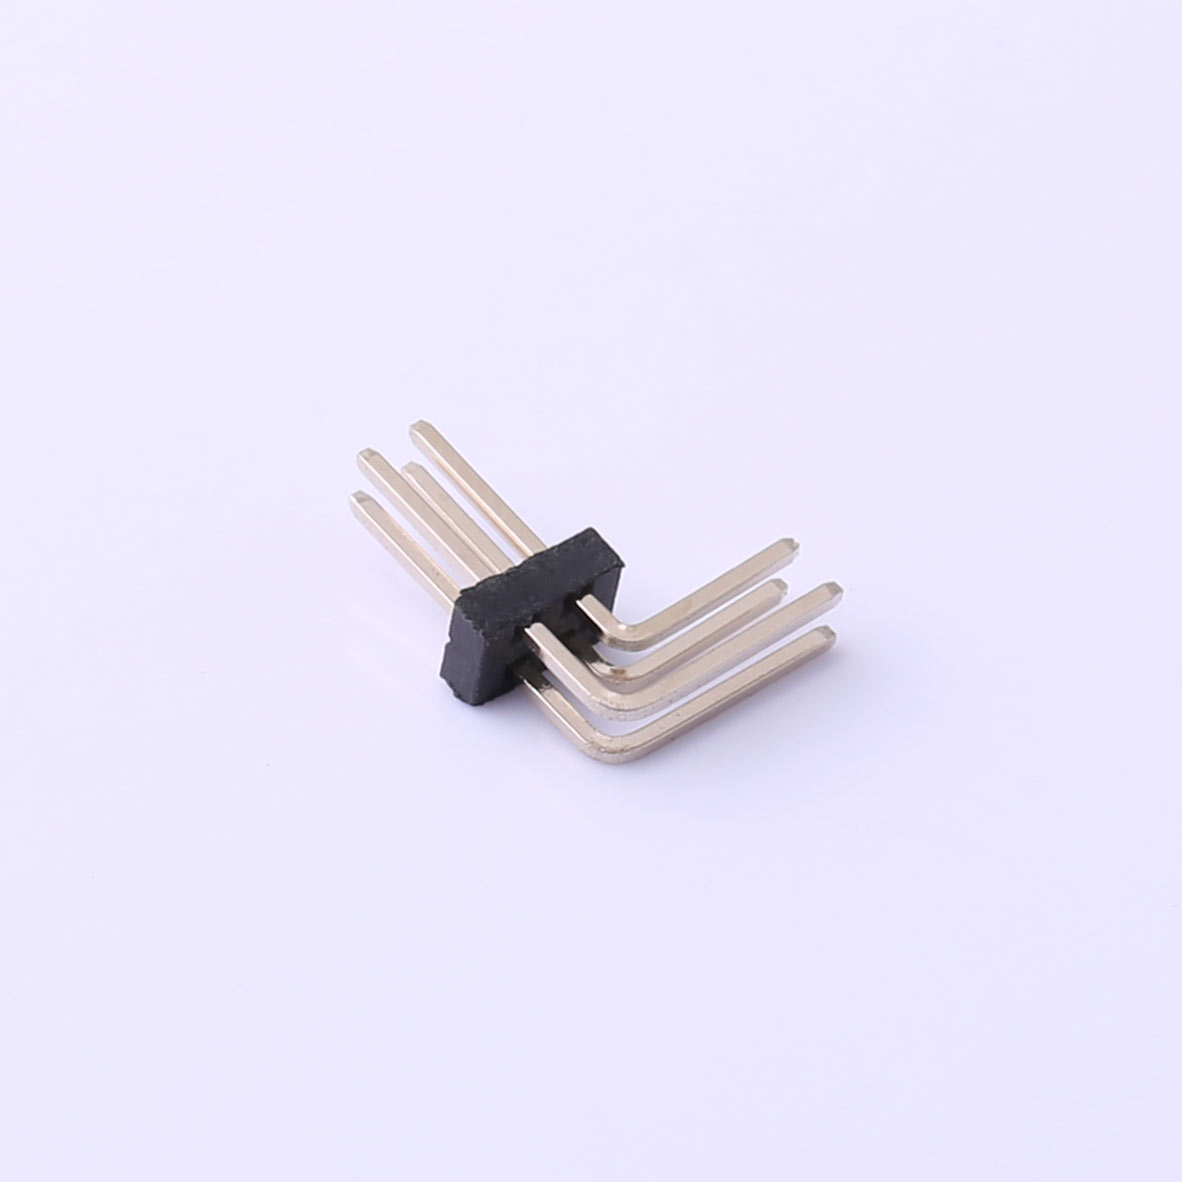 Kinghelm 1.27mm Pin Header Connector 2 Row*2 Pin 1A -  KH-1.27PH90-2X2P-L10.5